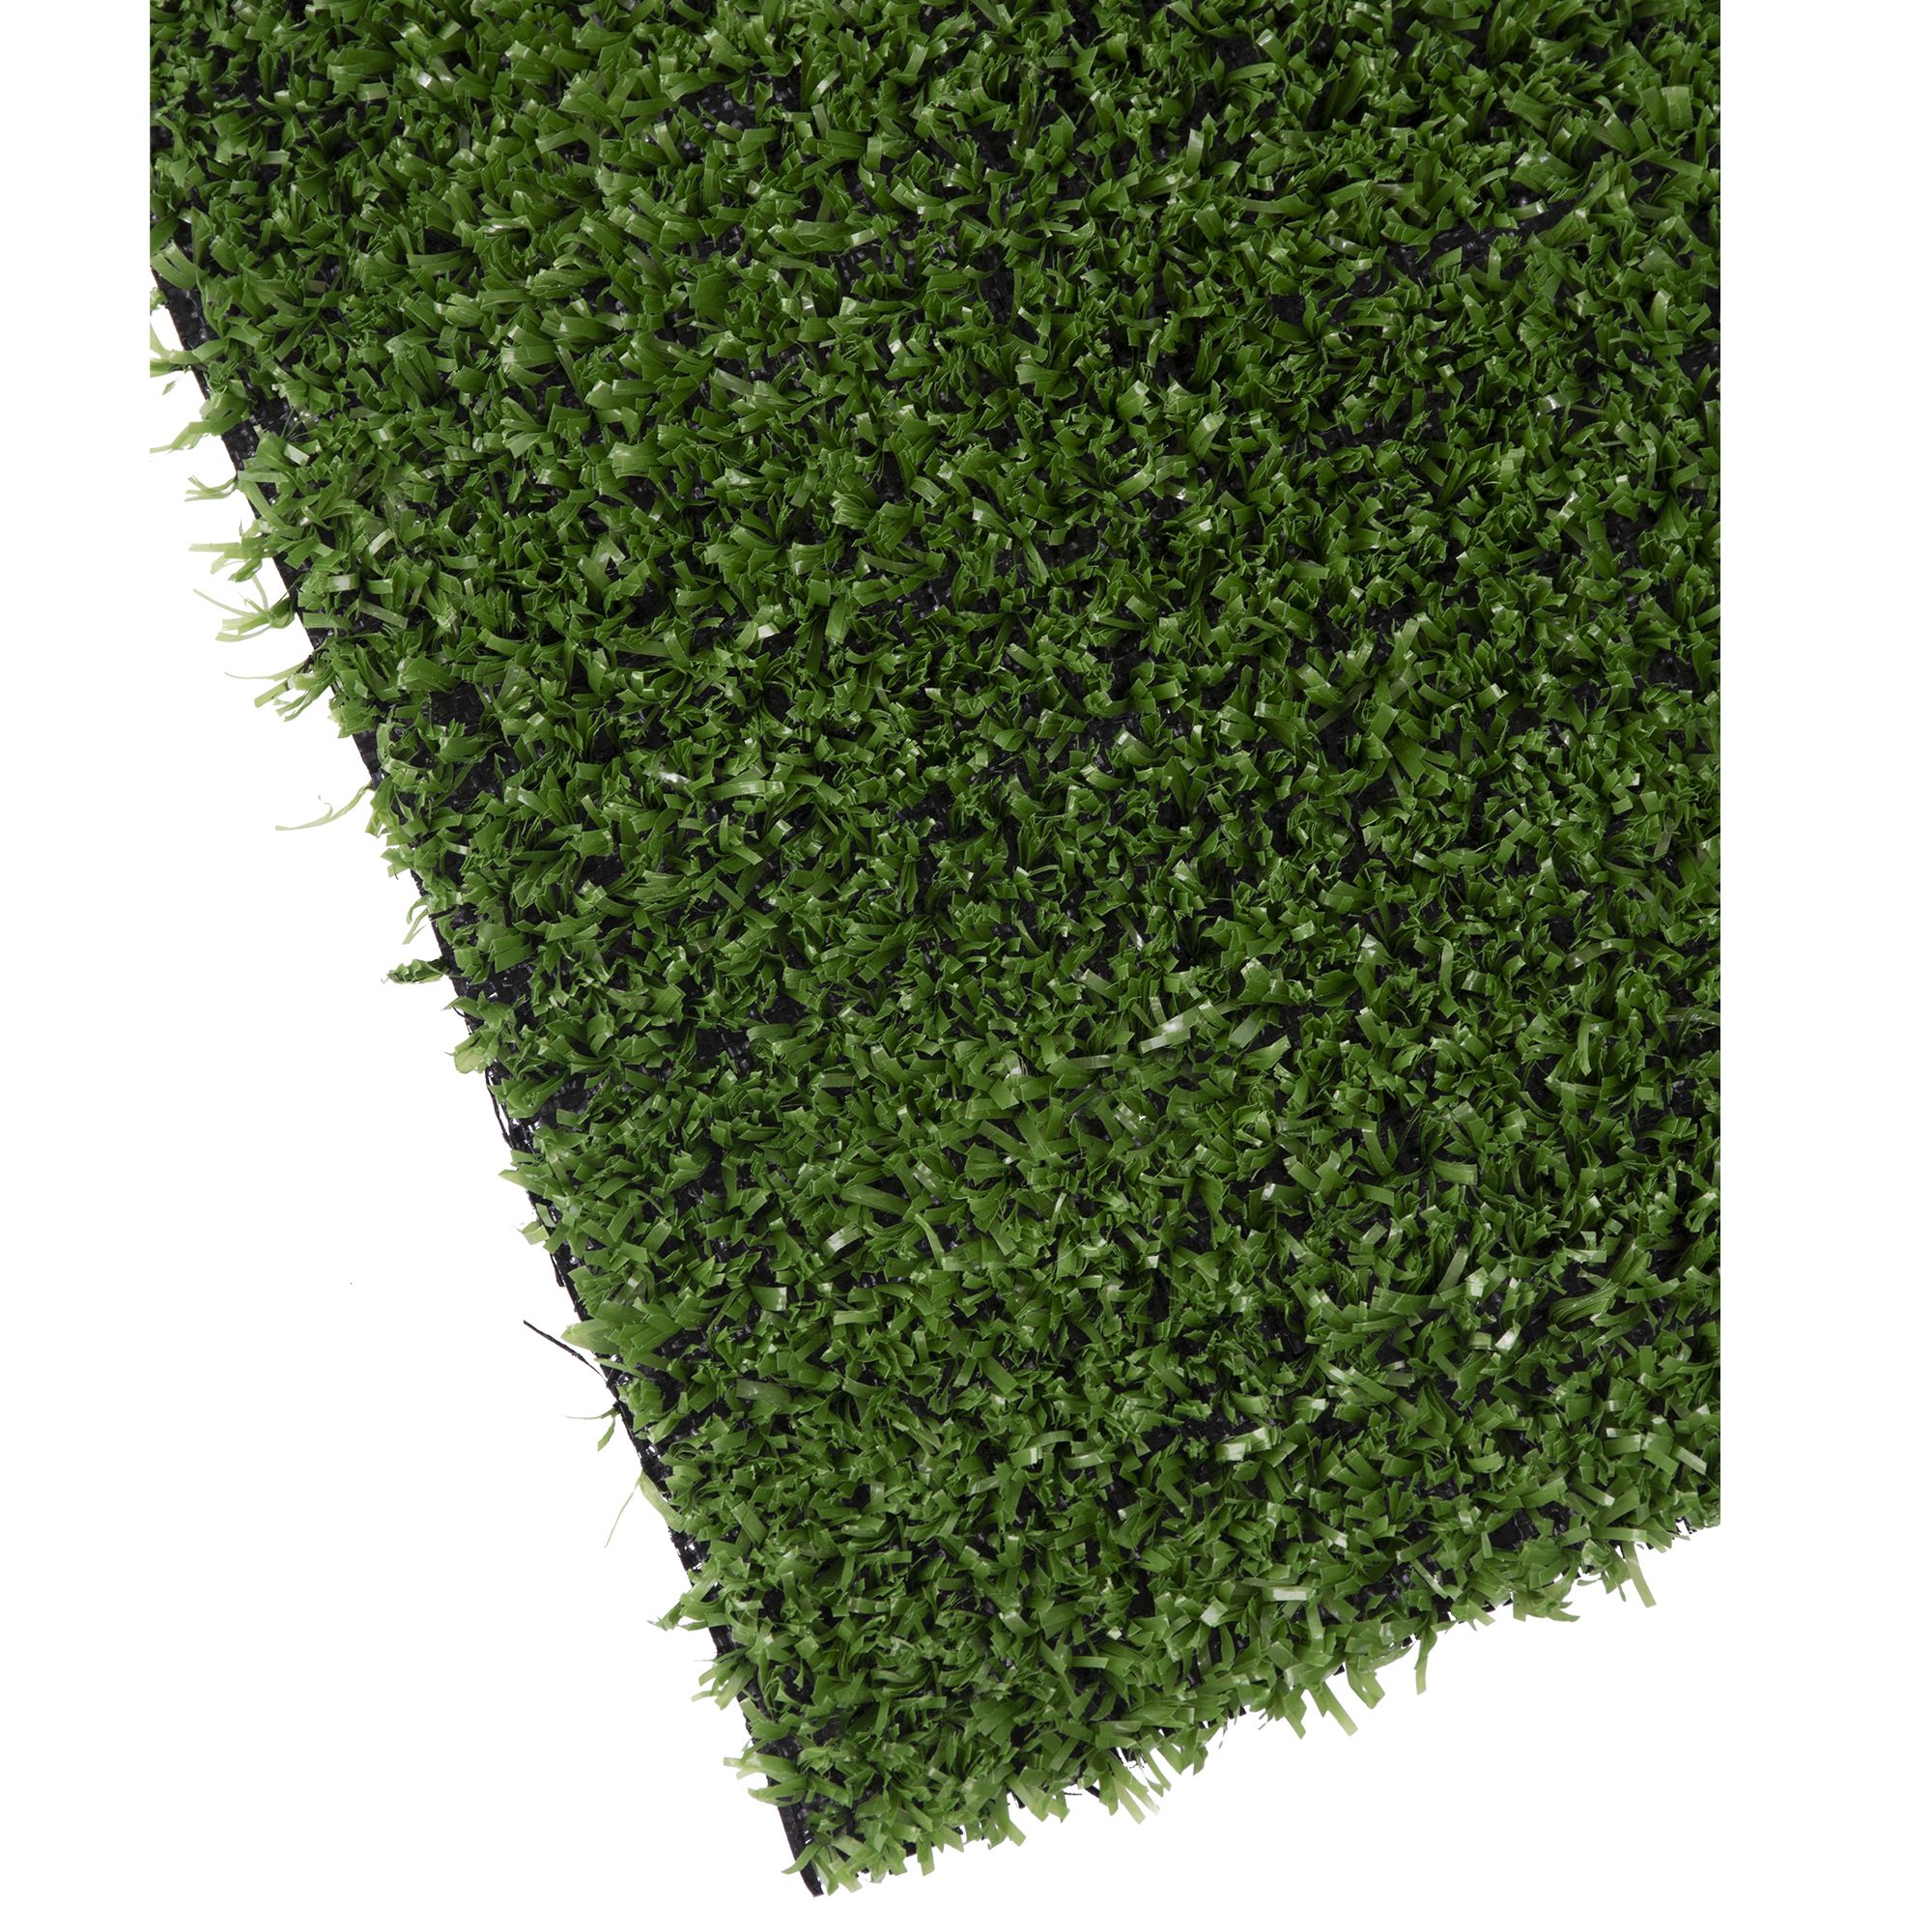 Umělý trávník, 7mm, 100cm x 3m, zelený, STREND PRO 2.100000 Kg GIGA Sklad20 2171695 3